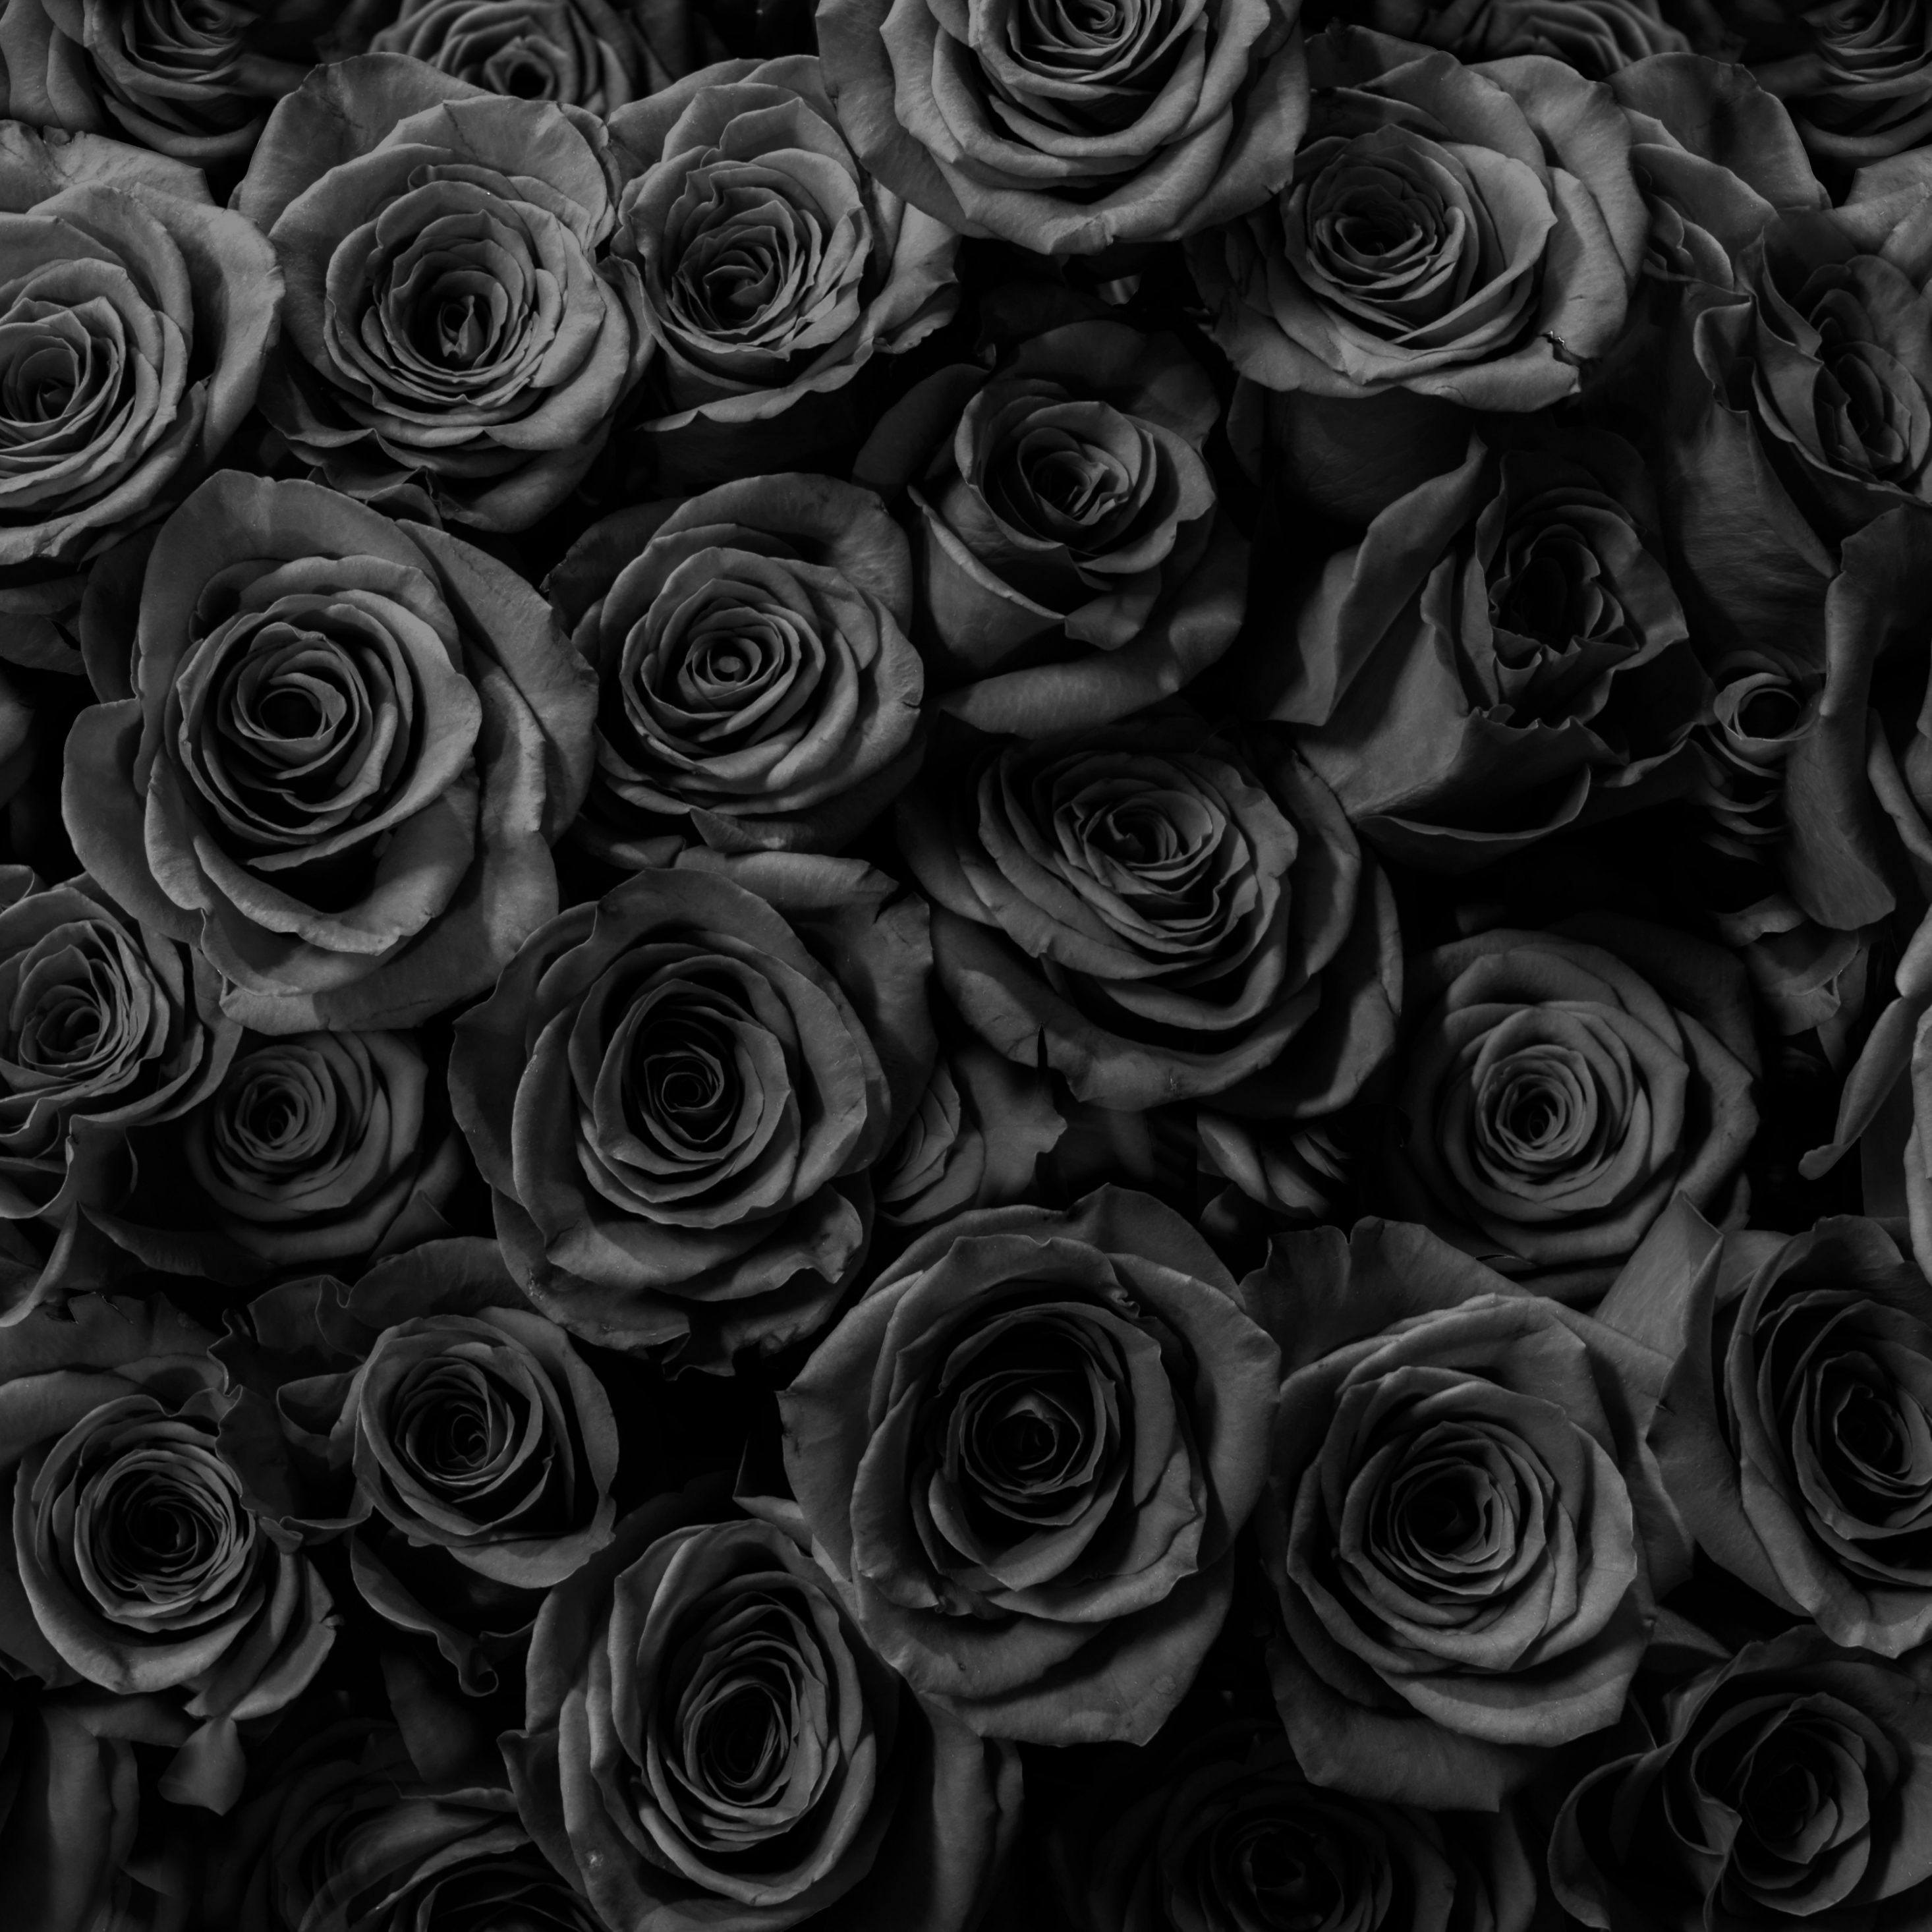 2932x2932 iPad Pro wallpaper 4k Black Roses Gift Anniversary iPad Wallpaper 2932x2932 pixels resolution